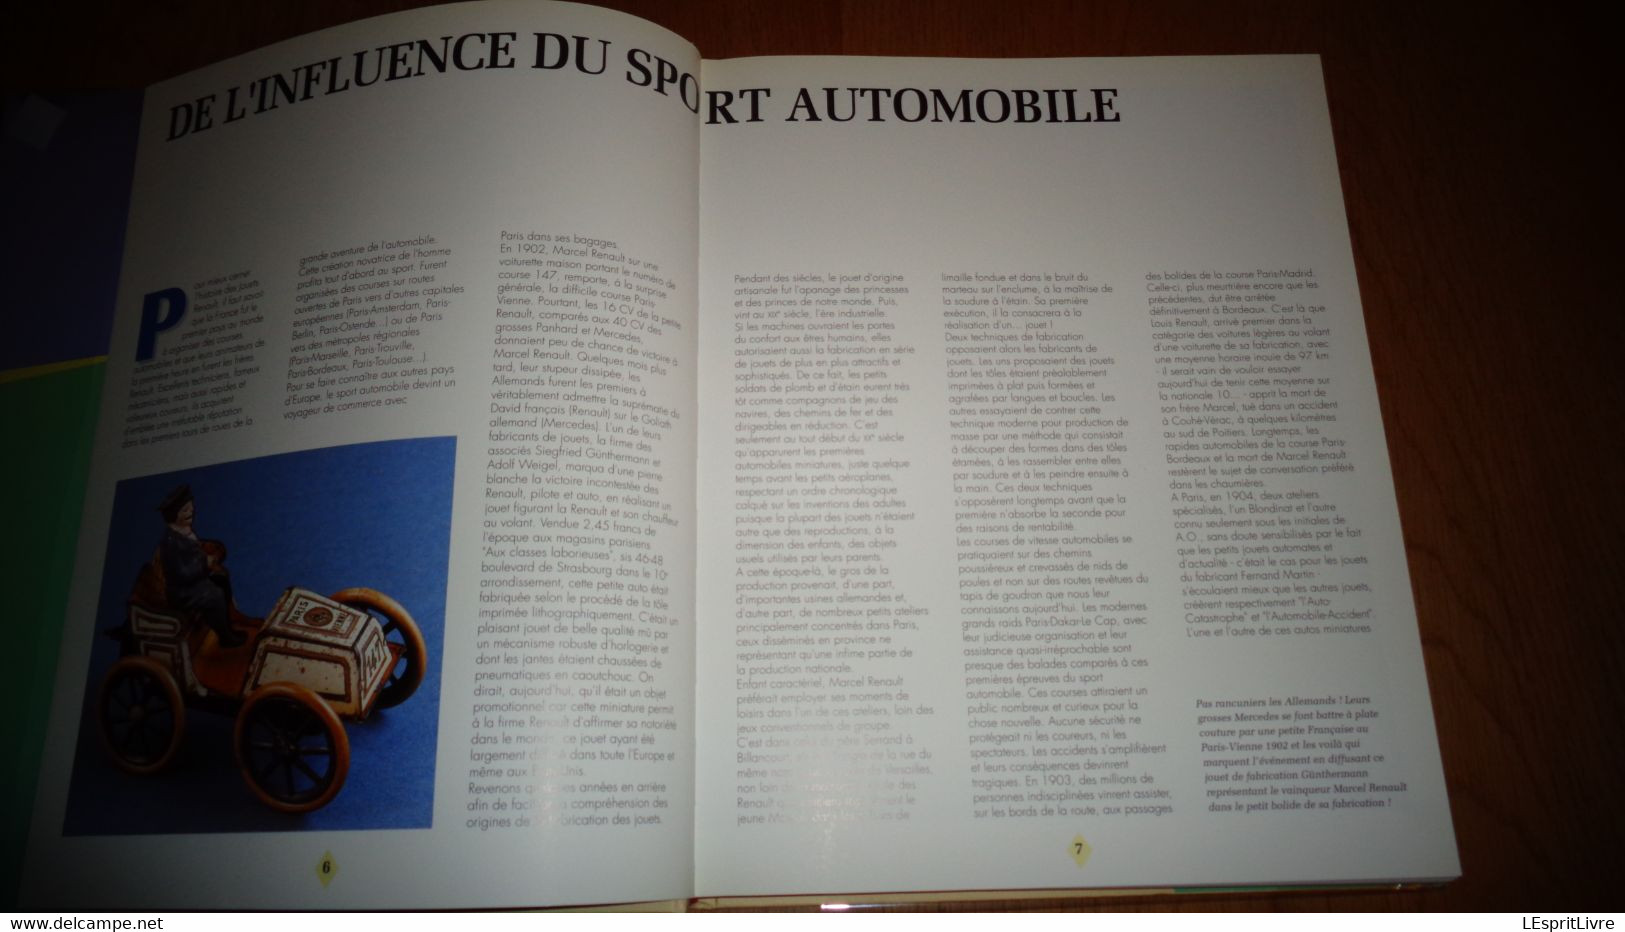 LES JOUETS RENAULT M Duprat Miniature Véhicule Auto Camion Jouet Modélisme Collection Voiture 4Cv Dauphine Estafette - Modellismo